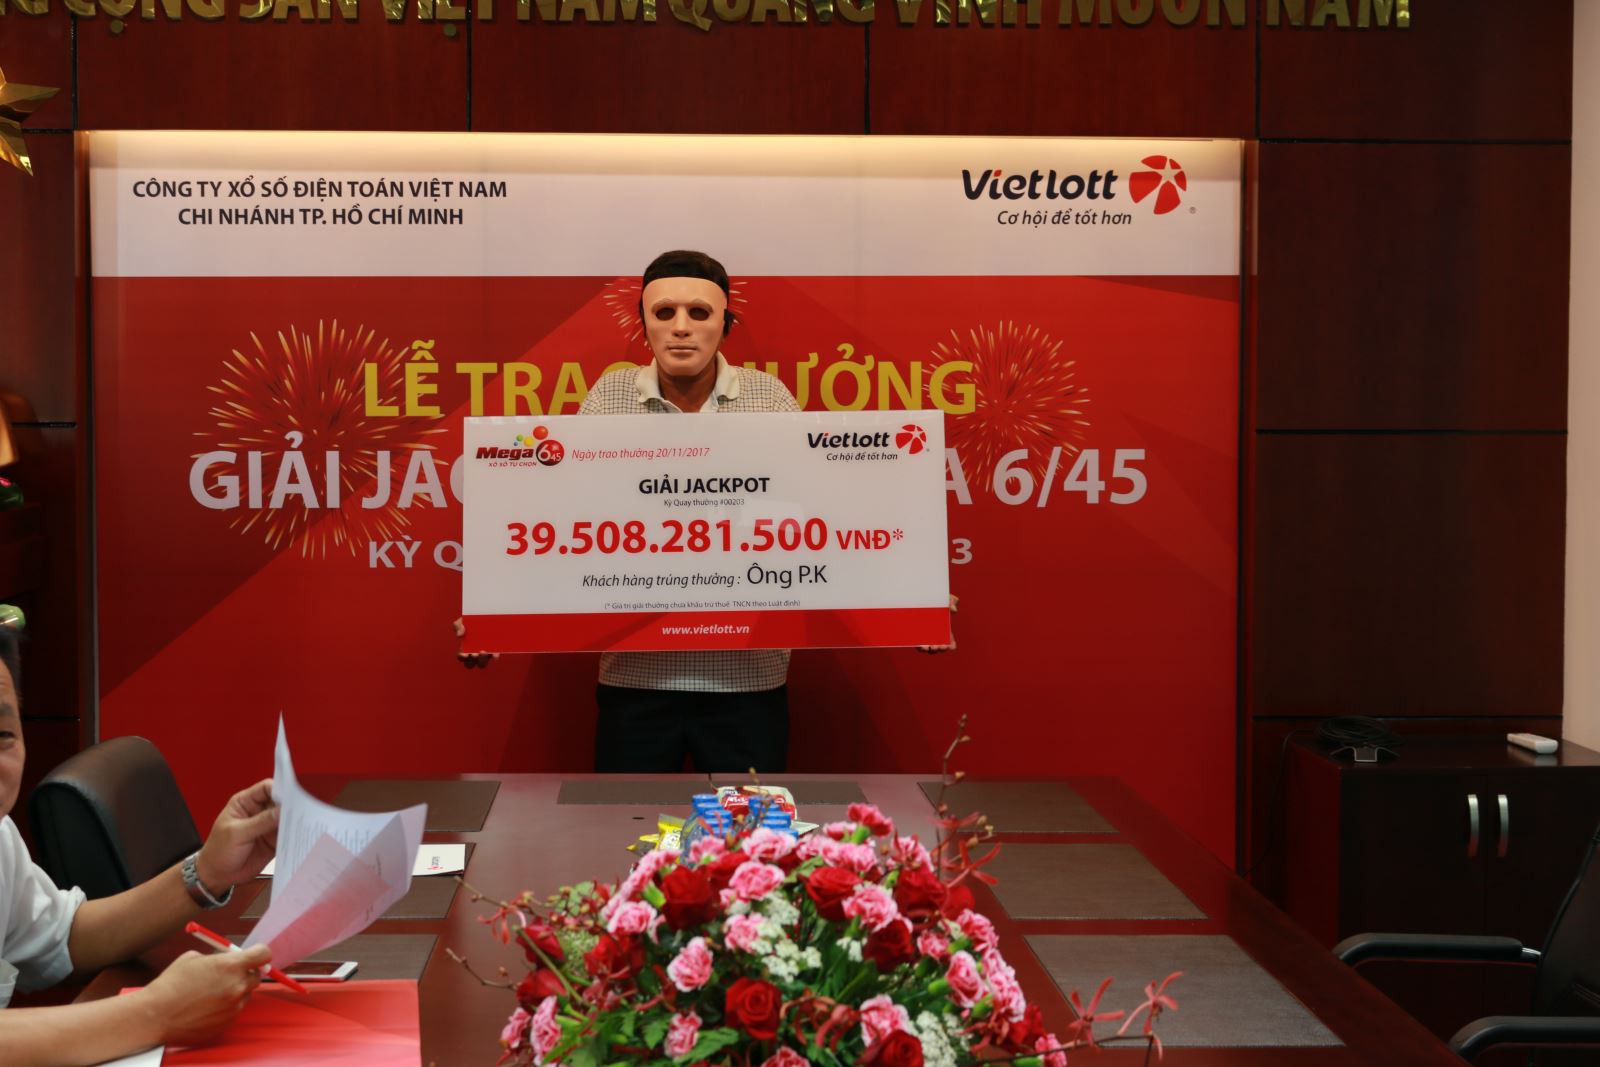 Xổ số Vietlott: Thêm một người đàn ông đeo mặt nạ nhận giải Jackpot hơn 39 tỷ đồng